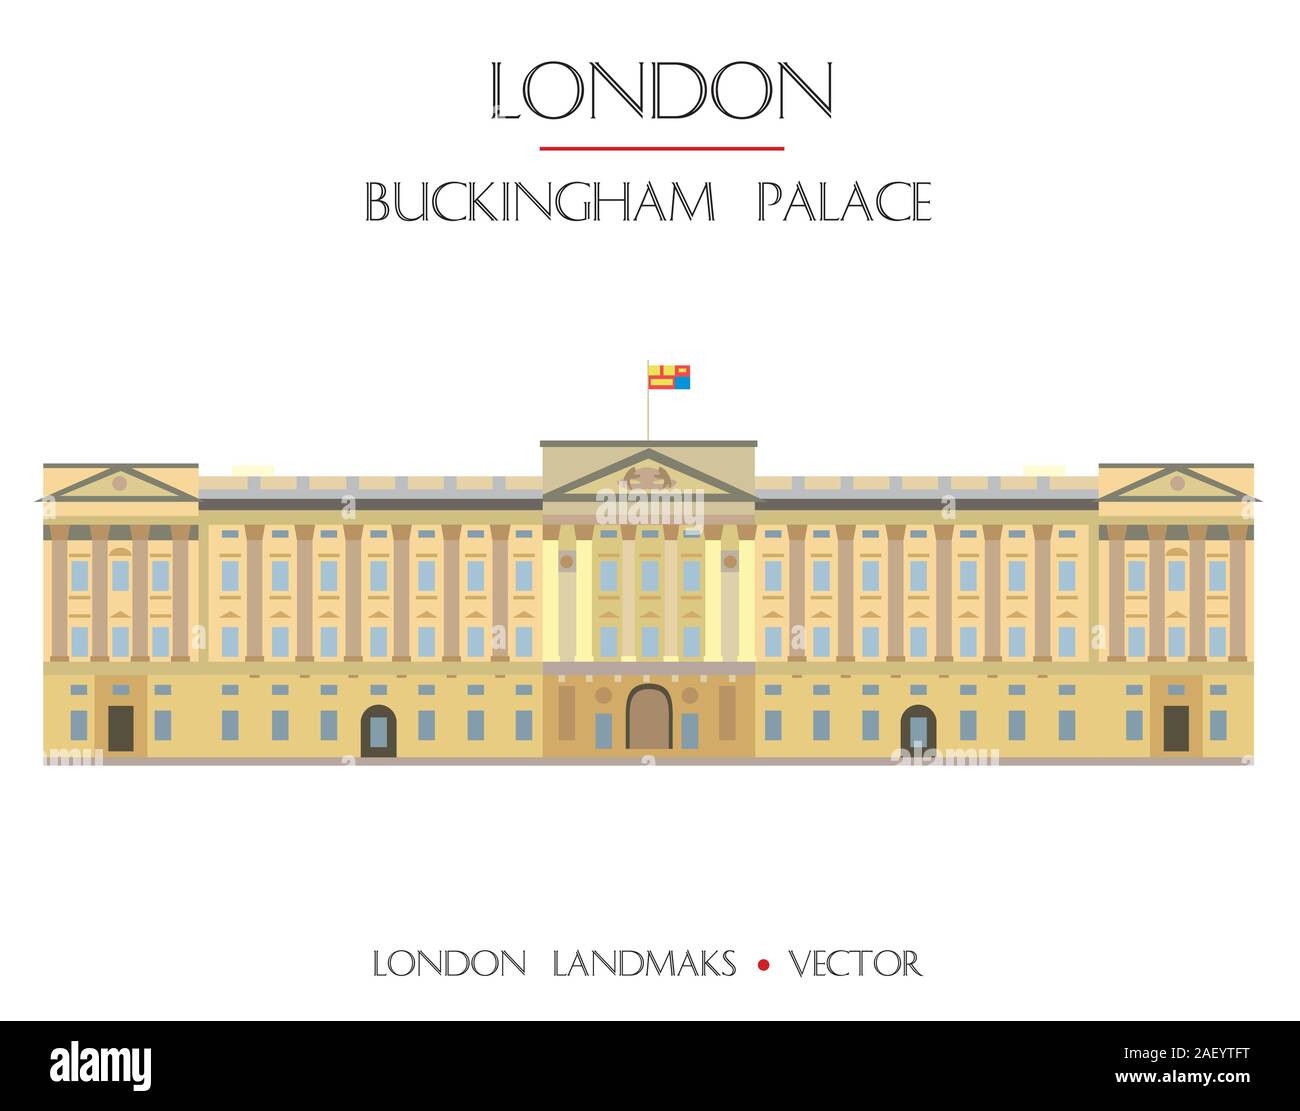 Bunte vektor Buckingham Palace, dem berühmten Wahrzeichen von London, England. Vektor flachbild Abbildung auf weißem Hintergrund. Lieferbar Abbildung: Stock Vektor